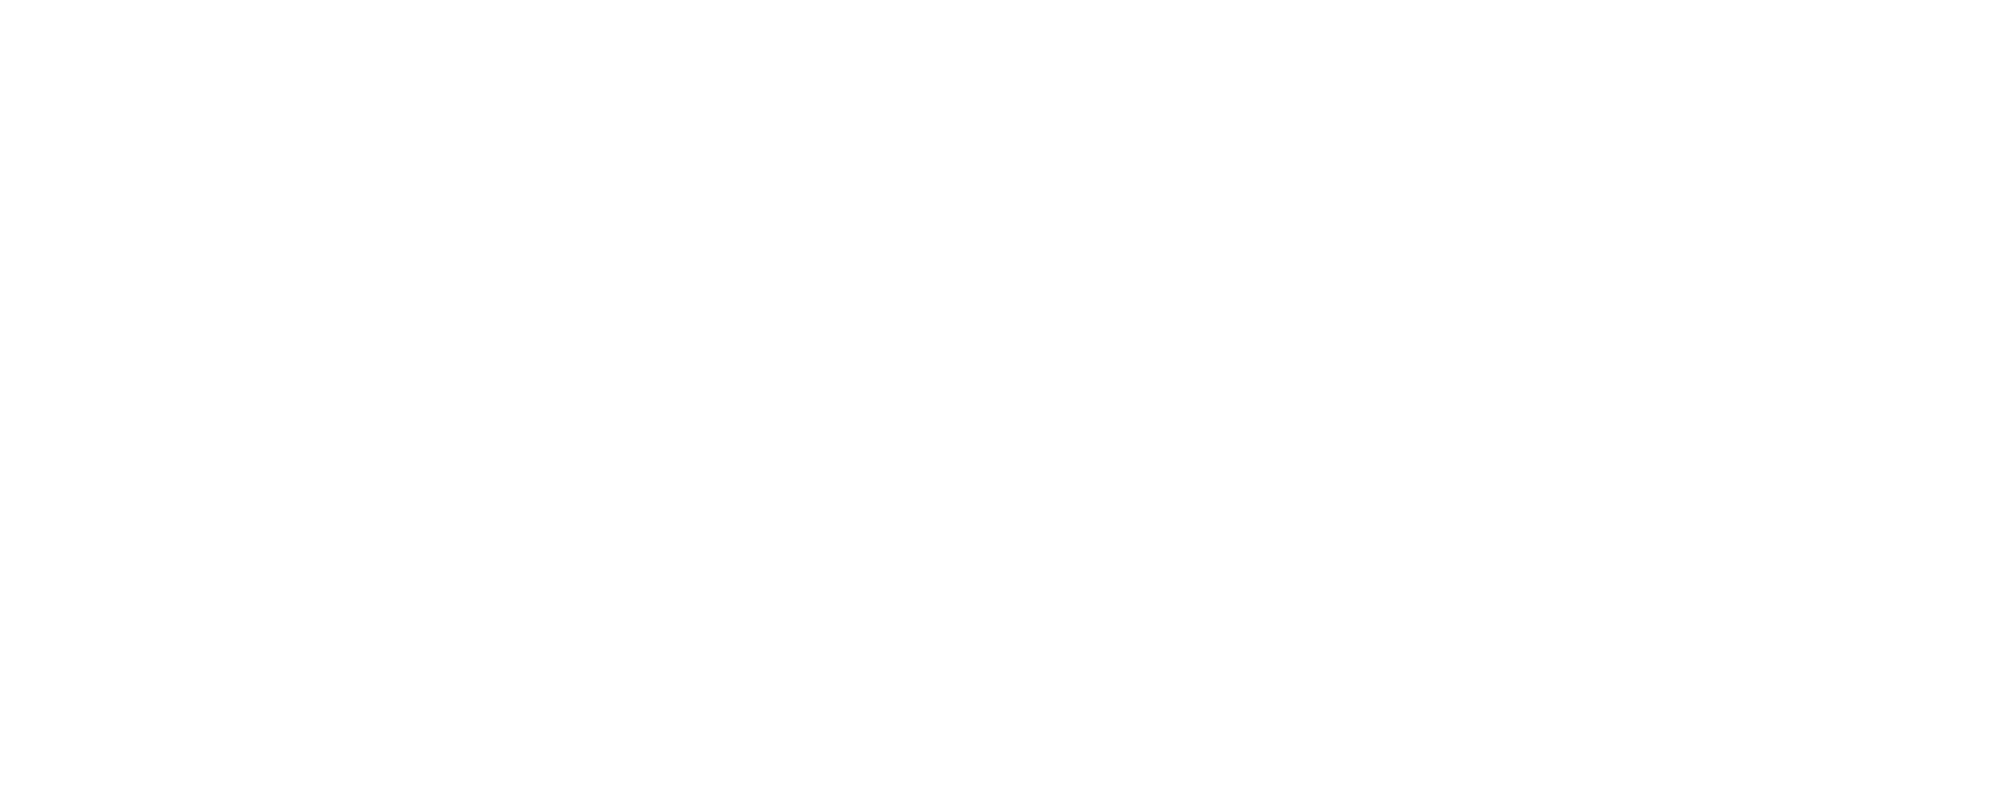 logo-menu-blanc-lau-haizetanx2